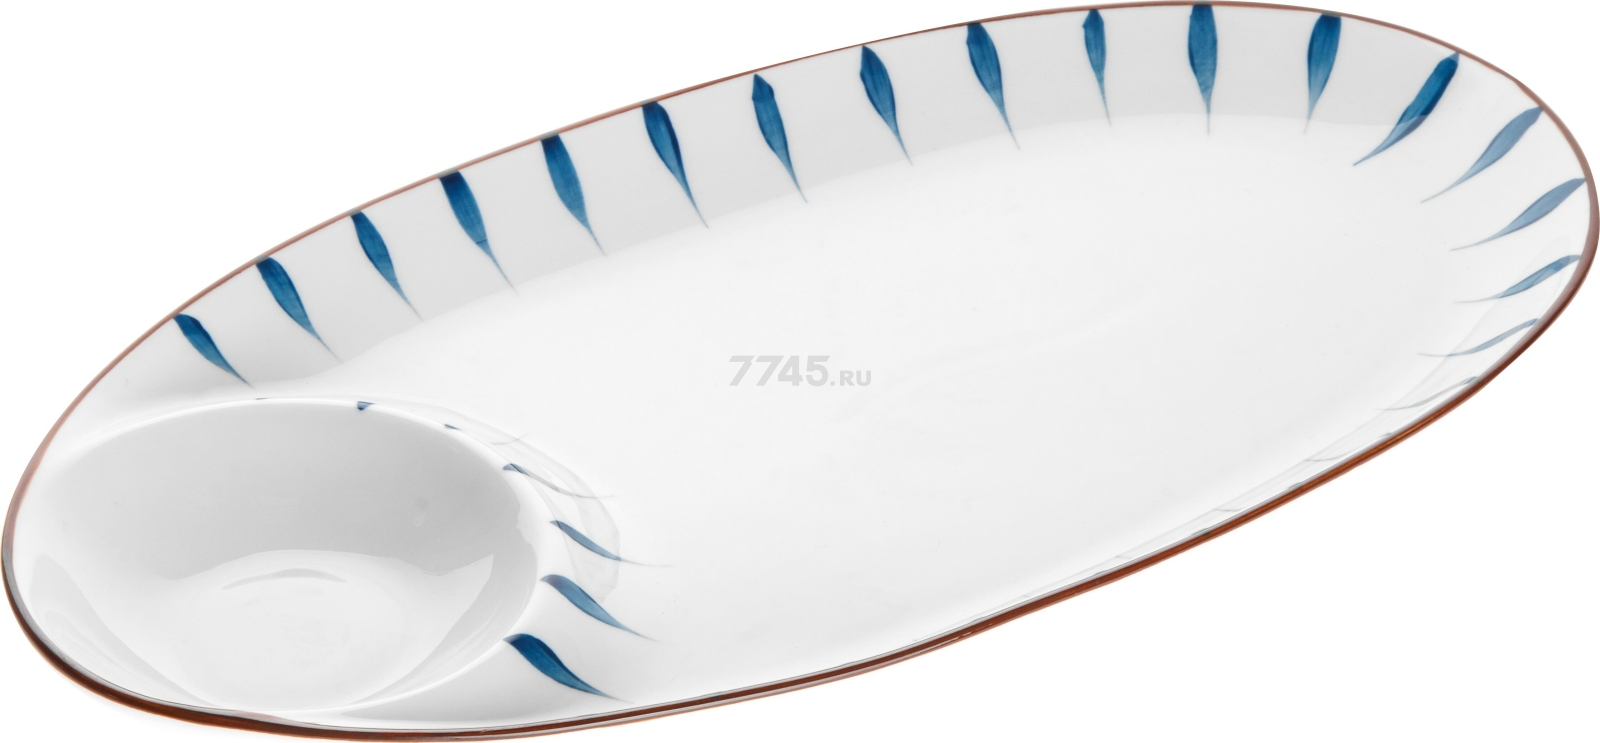 Блюдо керамическое овальное PERFECTO LINEA Marine 33х17,5х2,8 см (17-103301)